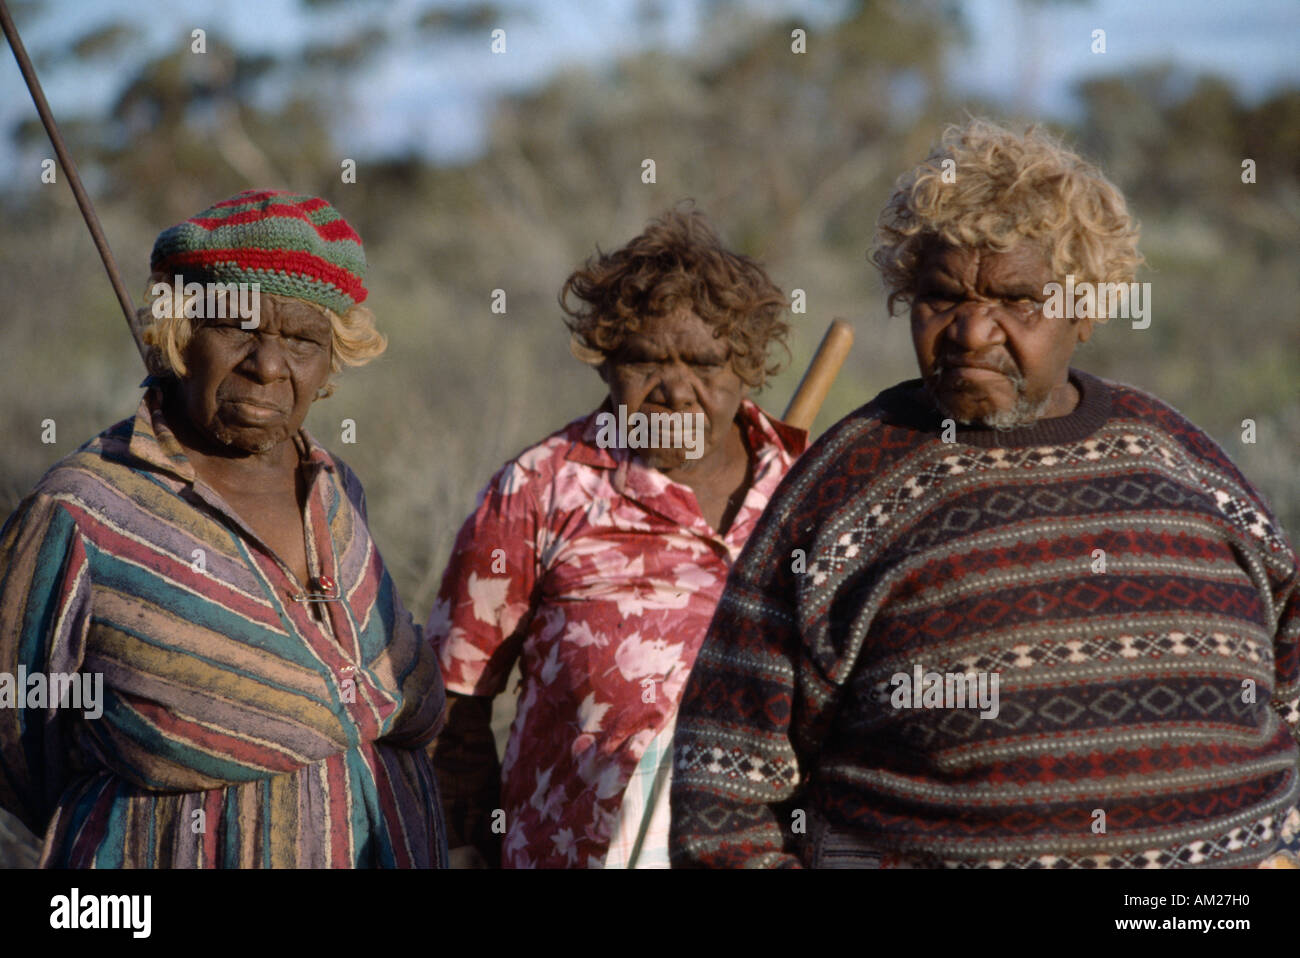 L'AUSTRALIE Le sud de Oak Valley Personnes ethniques d'Australasie Portrait de trois femmes autochtones dans la région de camp aborigène Banque D'Images